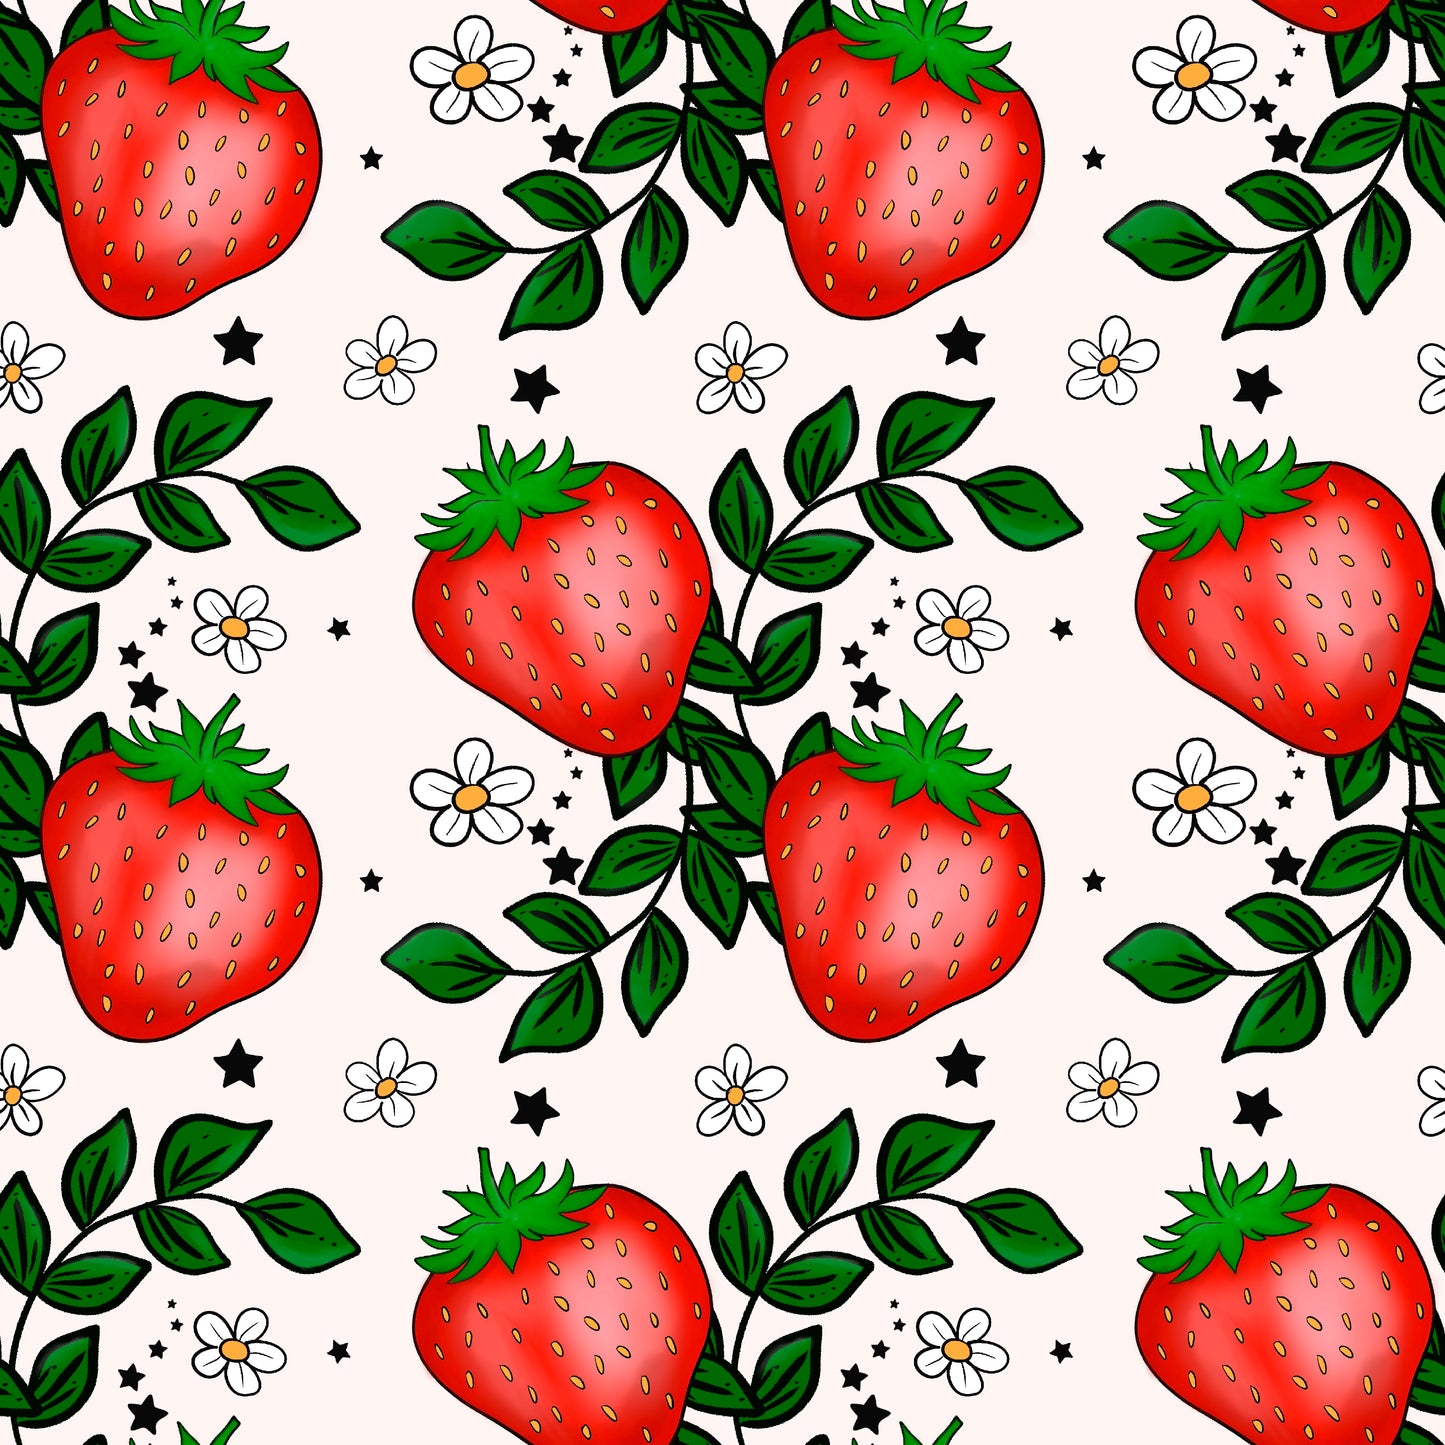 Strawberries n Daisies 12x12